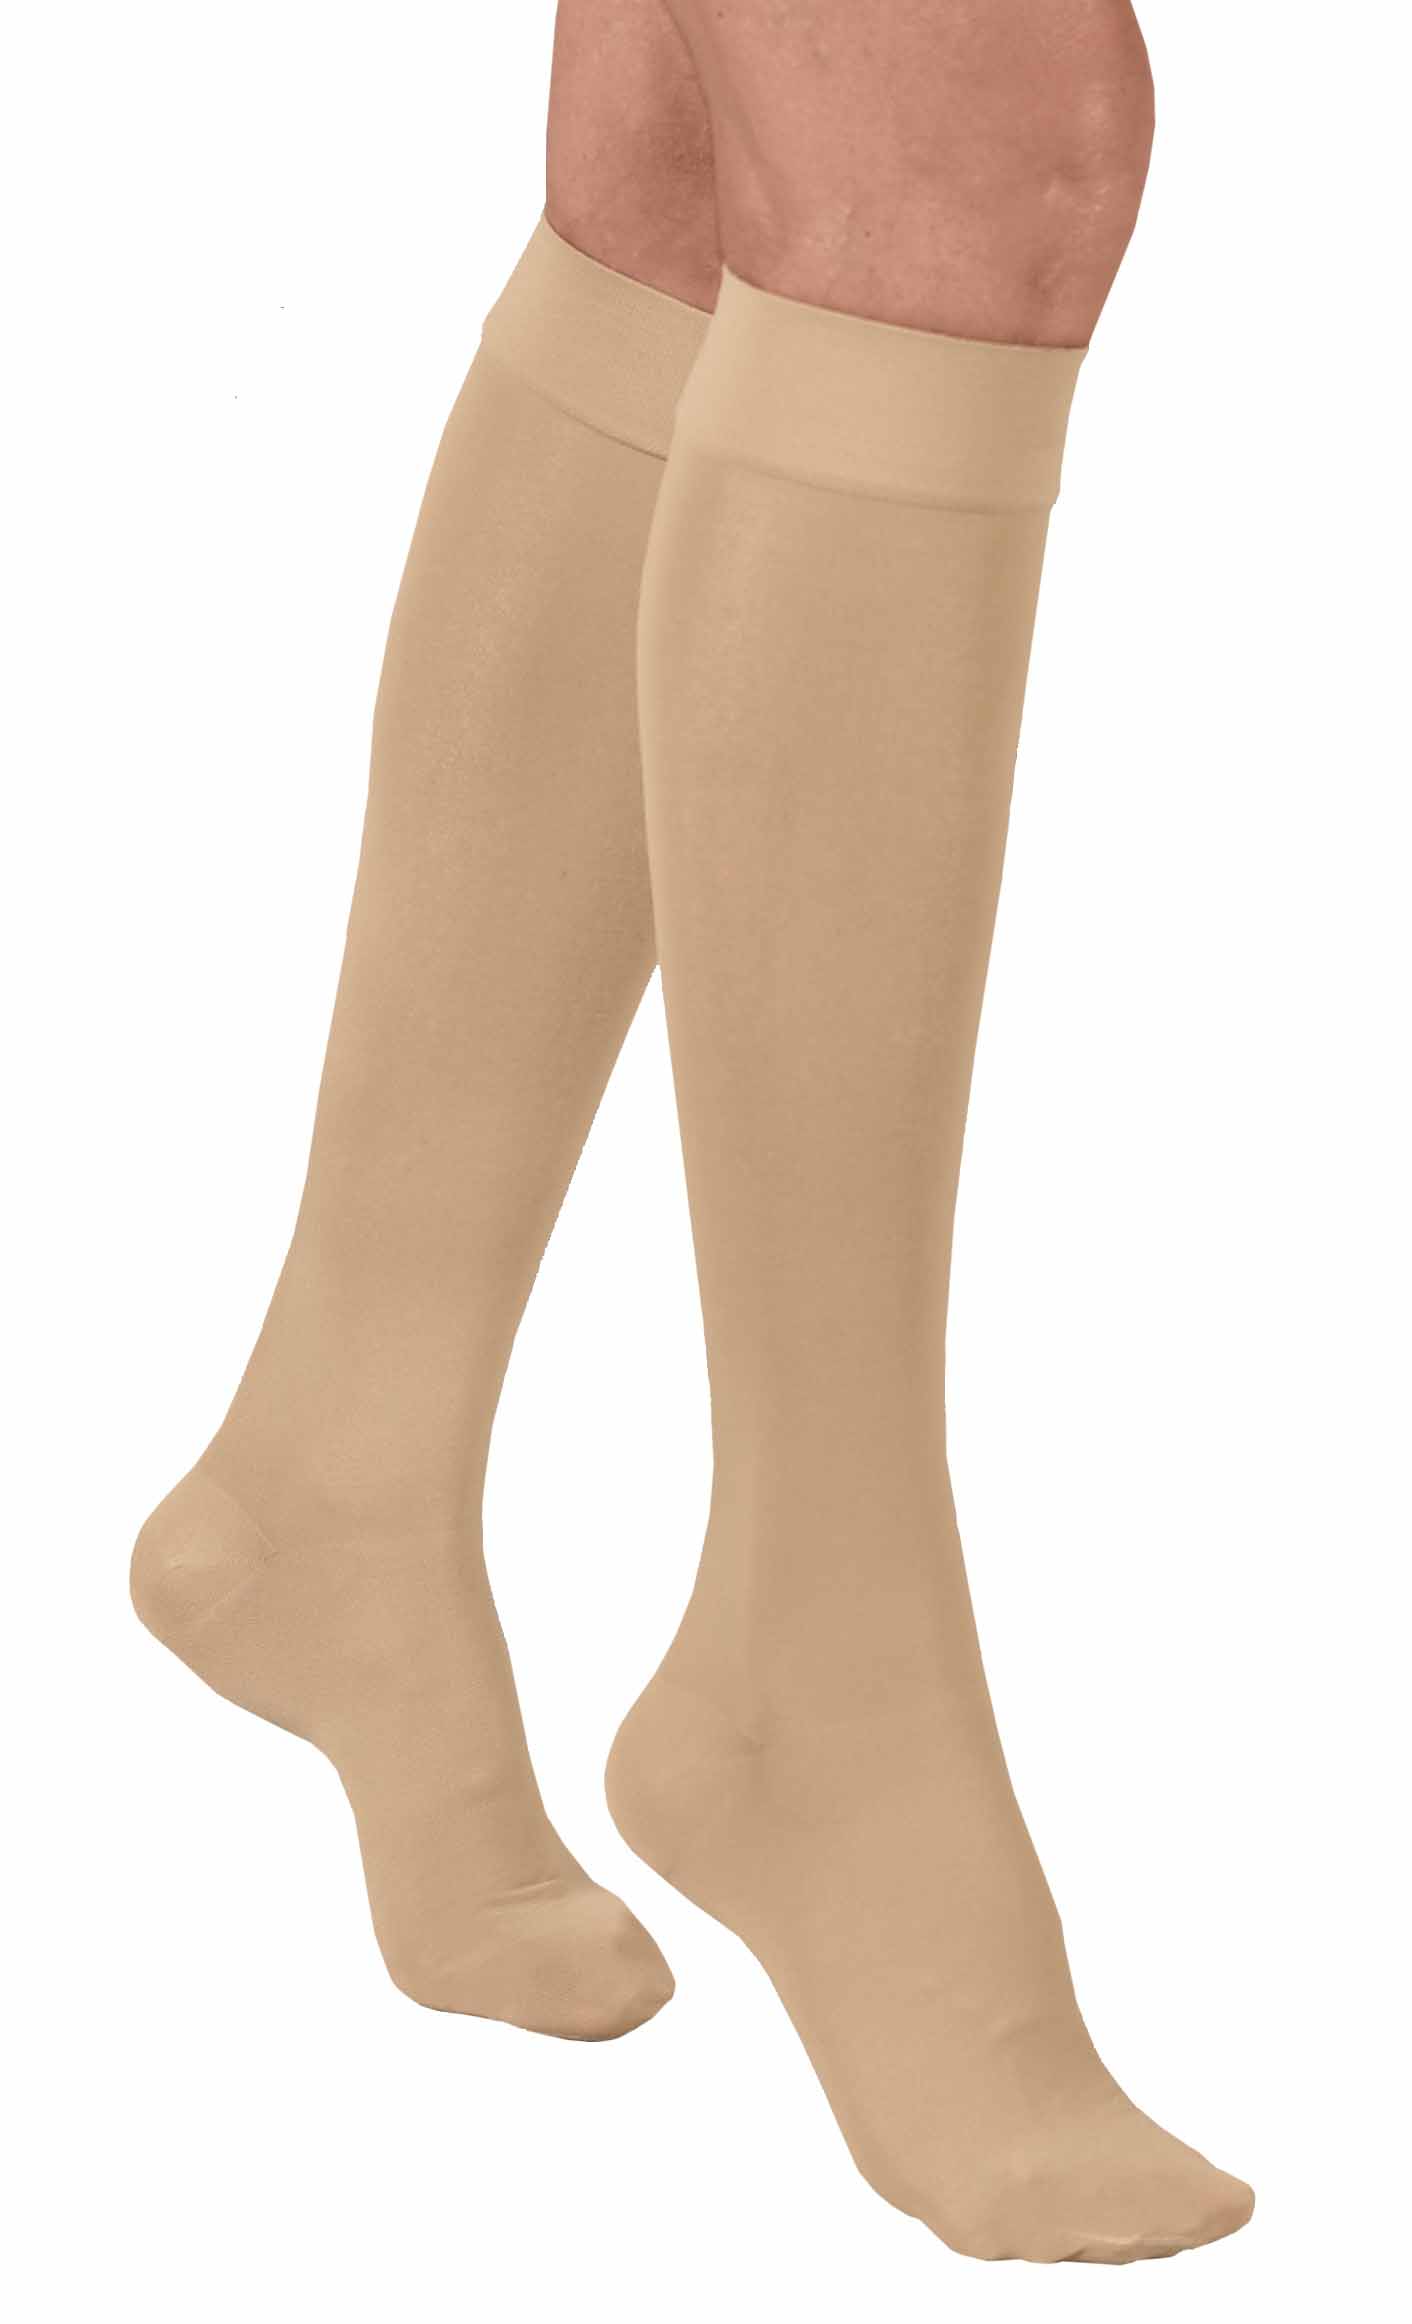 Κάλτσα Κ. Γόνατος-Κλειστά δάχτυλα Class I | Ιατρικά Ορθοπεδικά Είδη